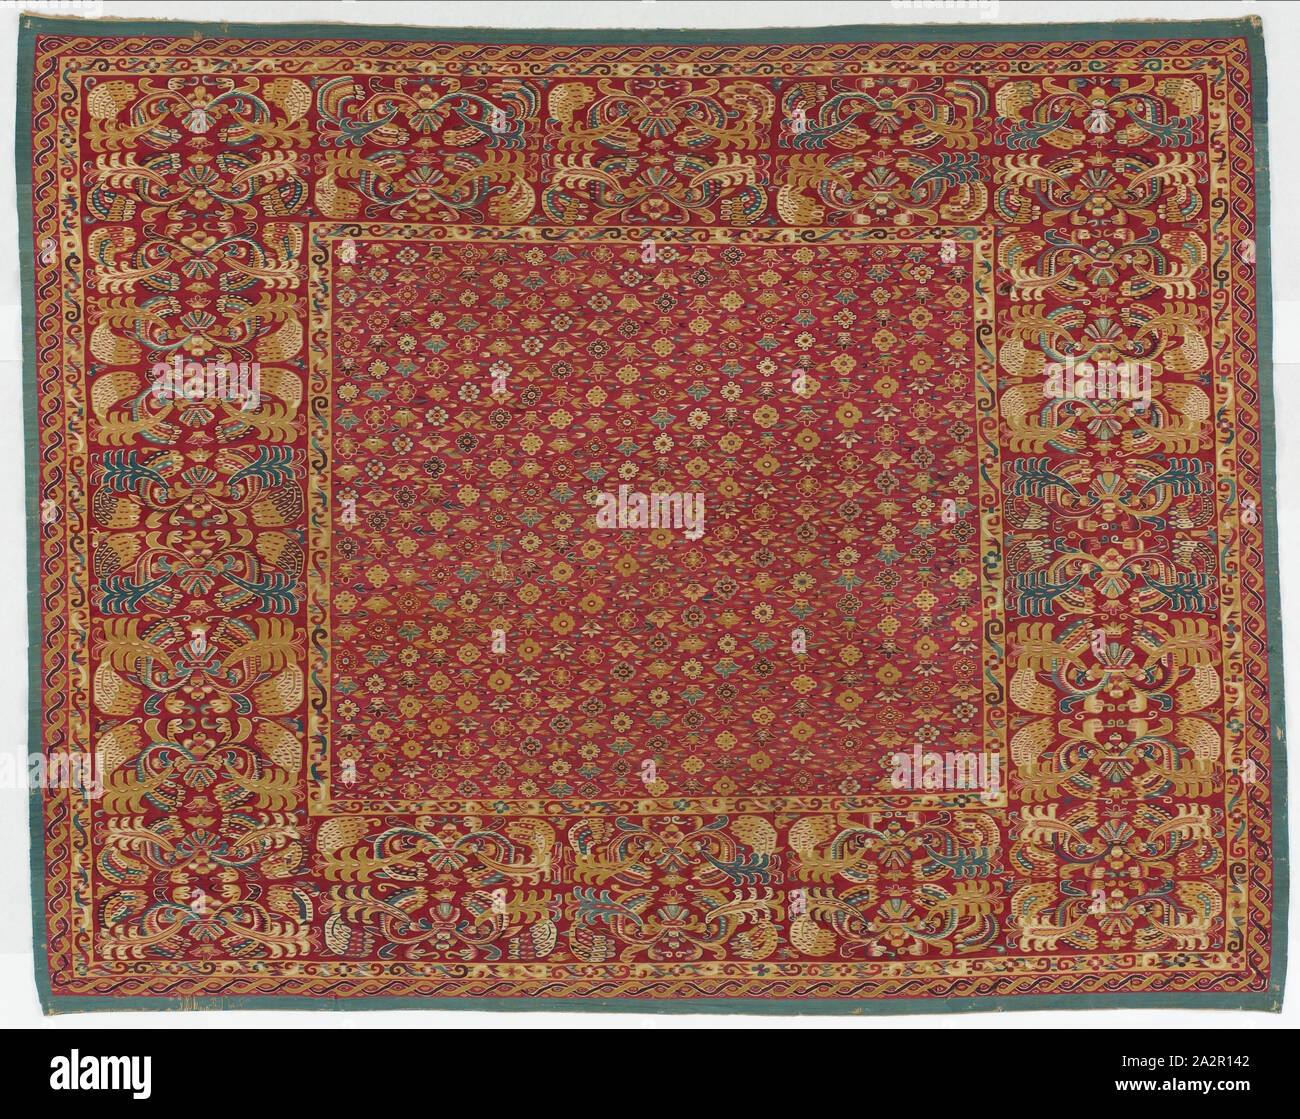 Peruanische, Bettdecke, 17. Jahrhundert, Gobelin-webart, Baumwolle Kett- und Schussfaden camelid, Gesamt: 8 3/16 x 6 7/16 ft. (98 1/2 x 77 in Stockfoto